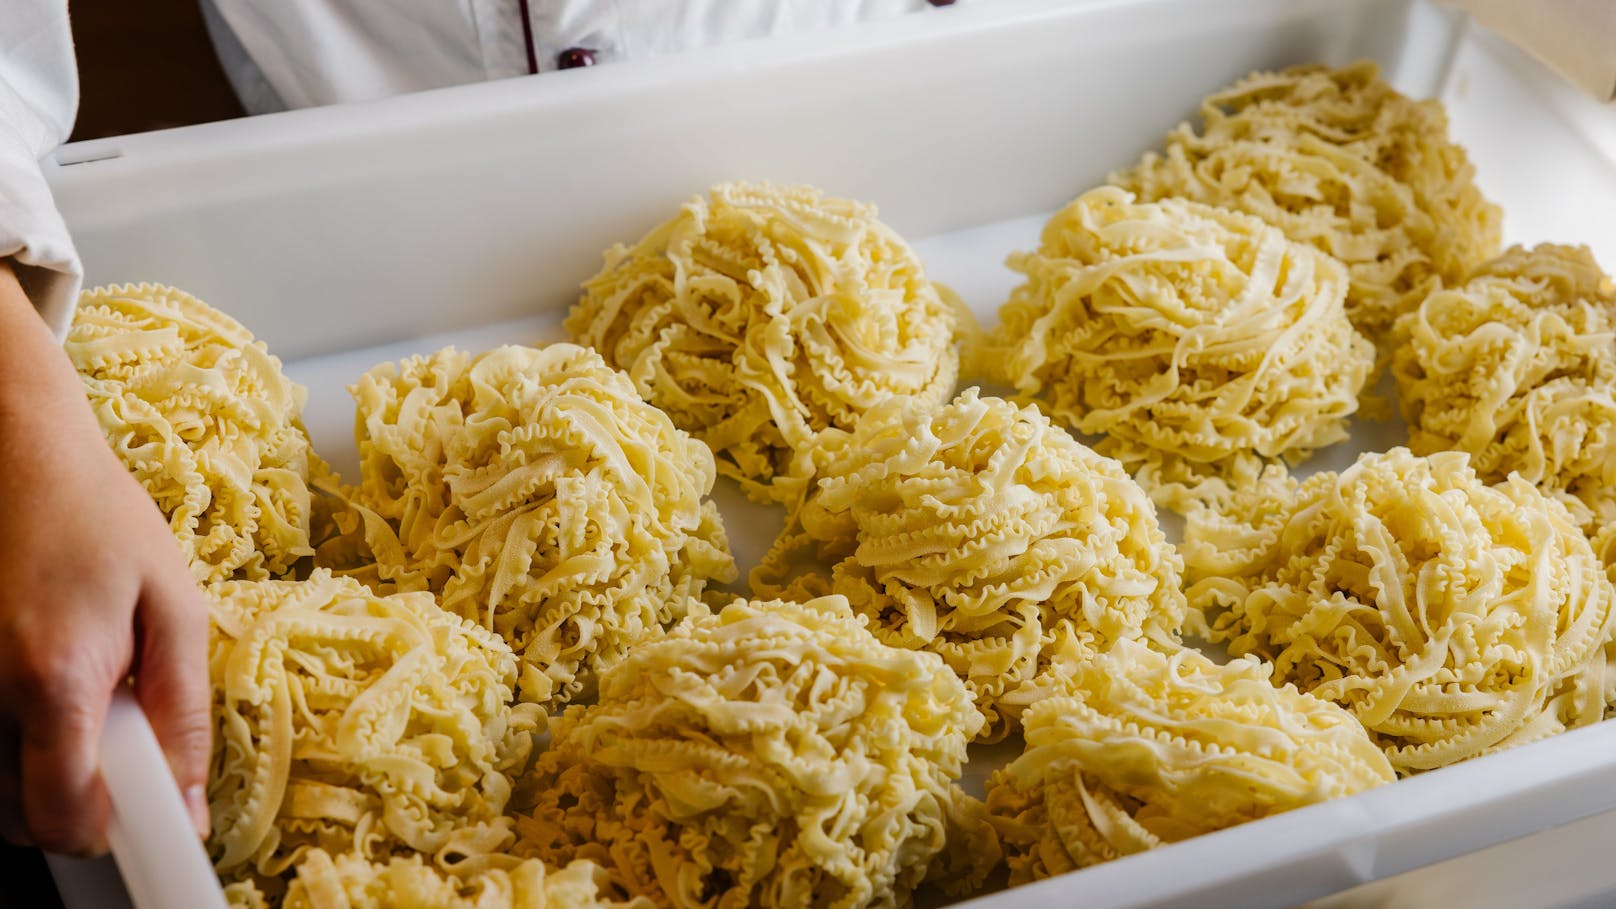 Ab dem 16. November können sich Pasta-Liebhaber auf eine noch größere Vielfalt an Pasta-Kreationen freuen. Neue hausgemachte Sorte: Pappardelle. 